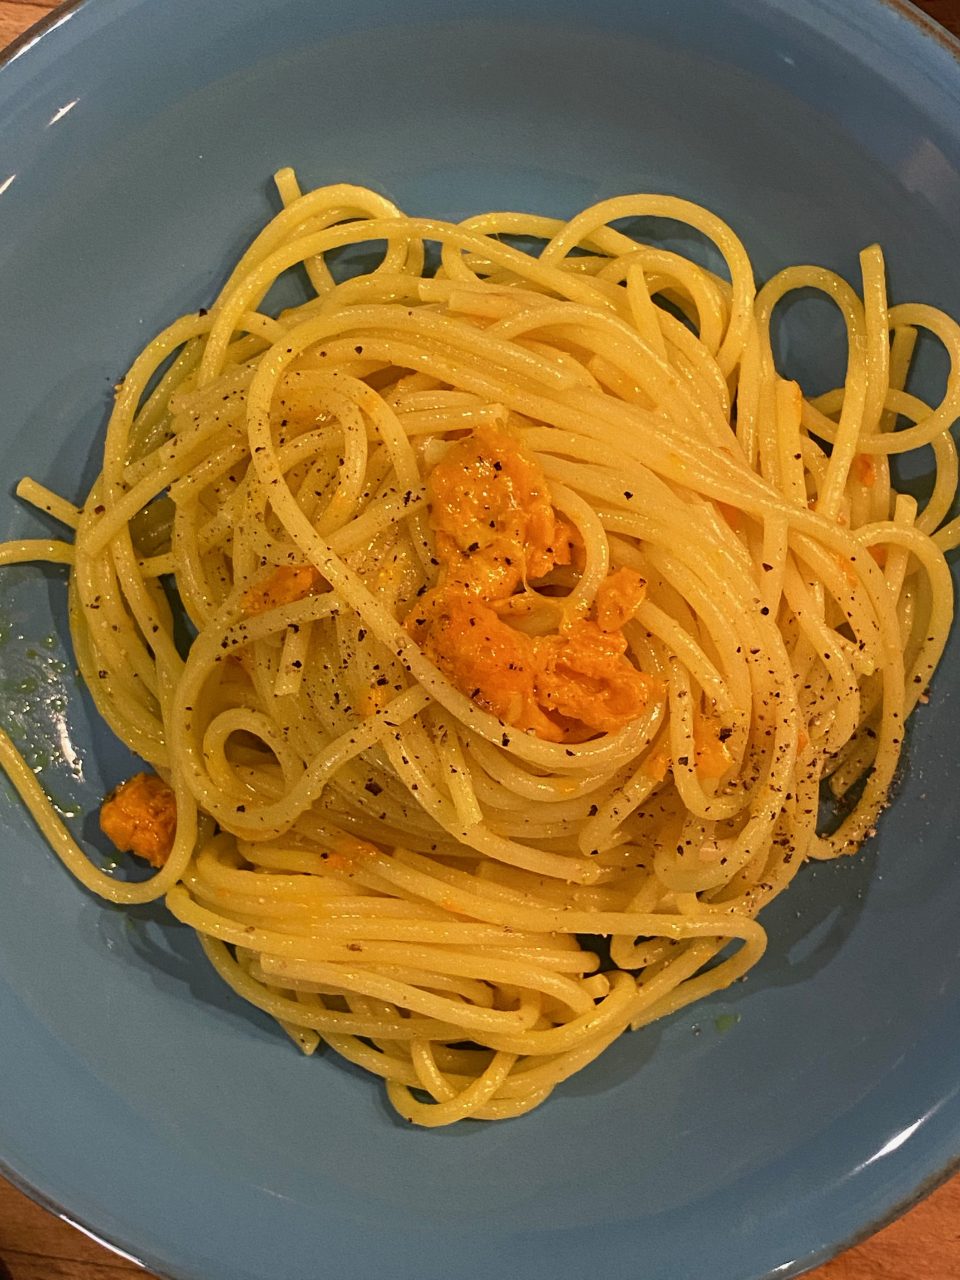 Spaghetti con radice di curcuma fresca